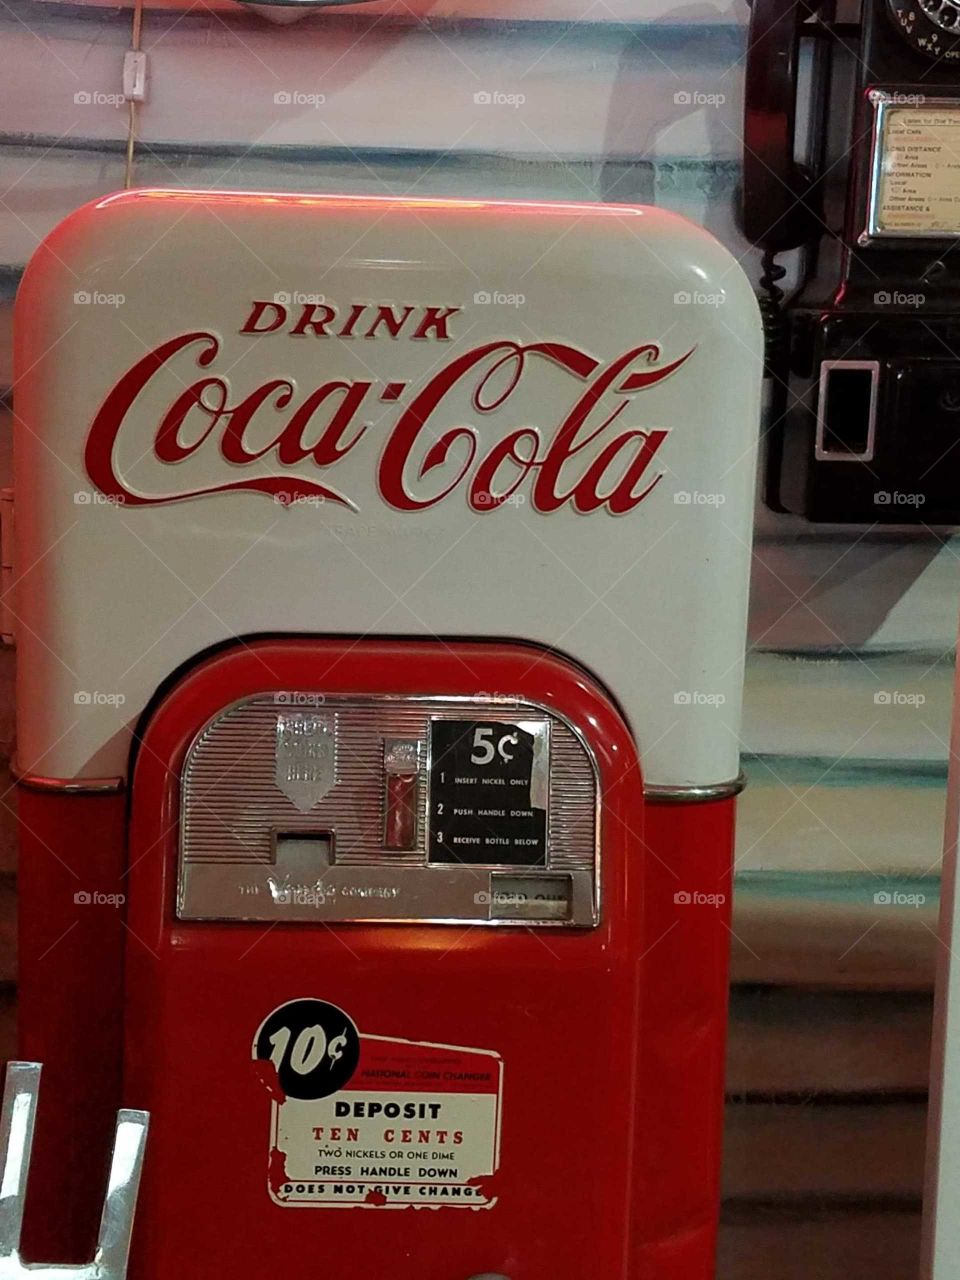 Vintage Coke Machine